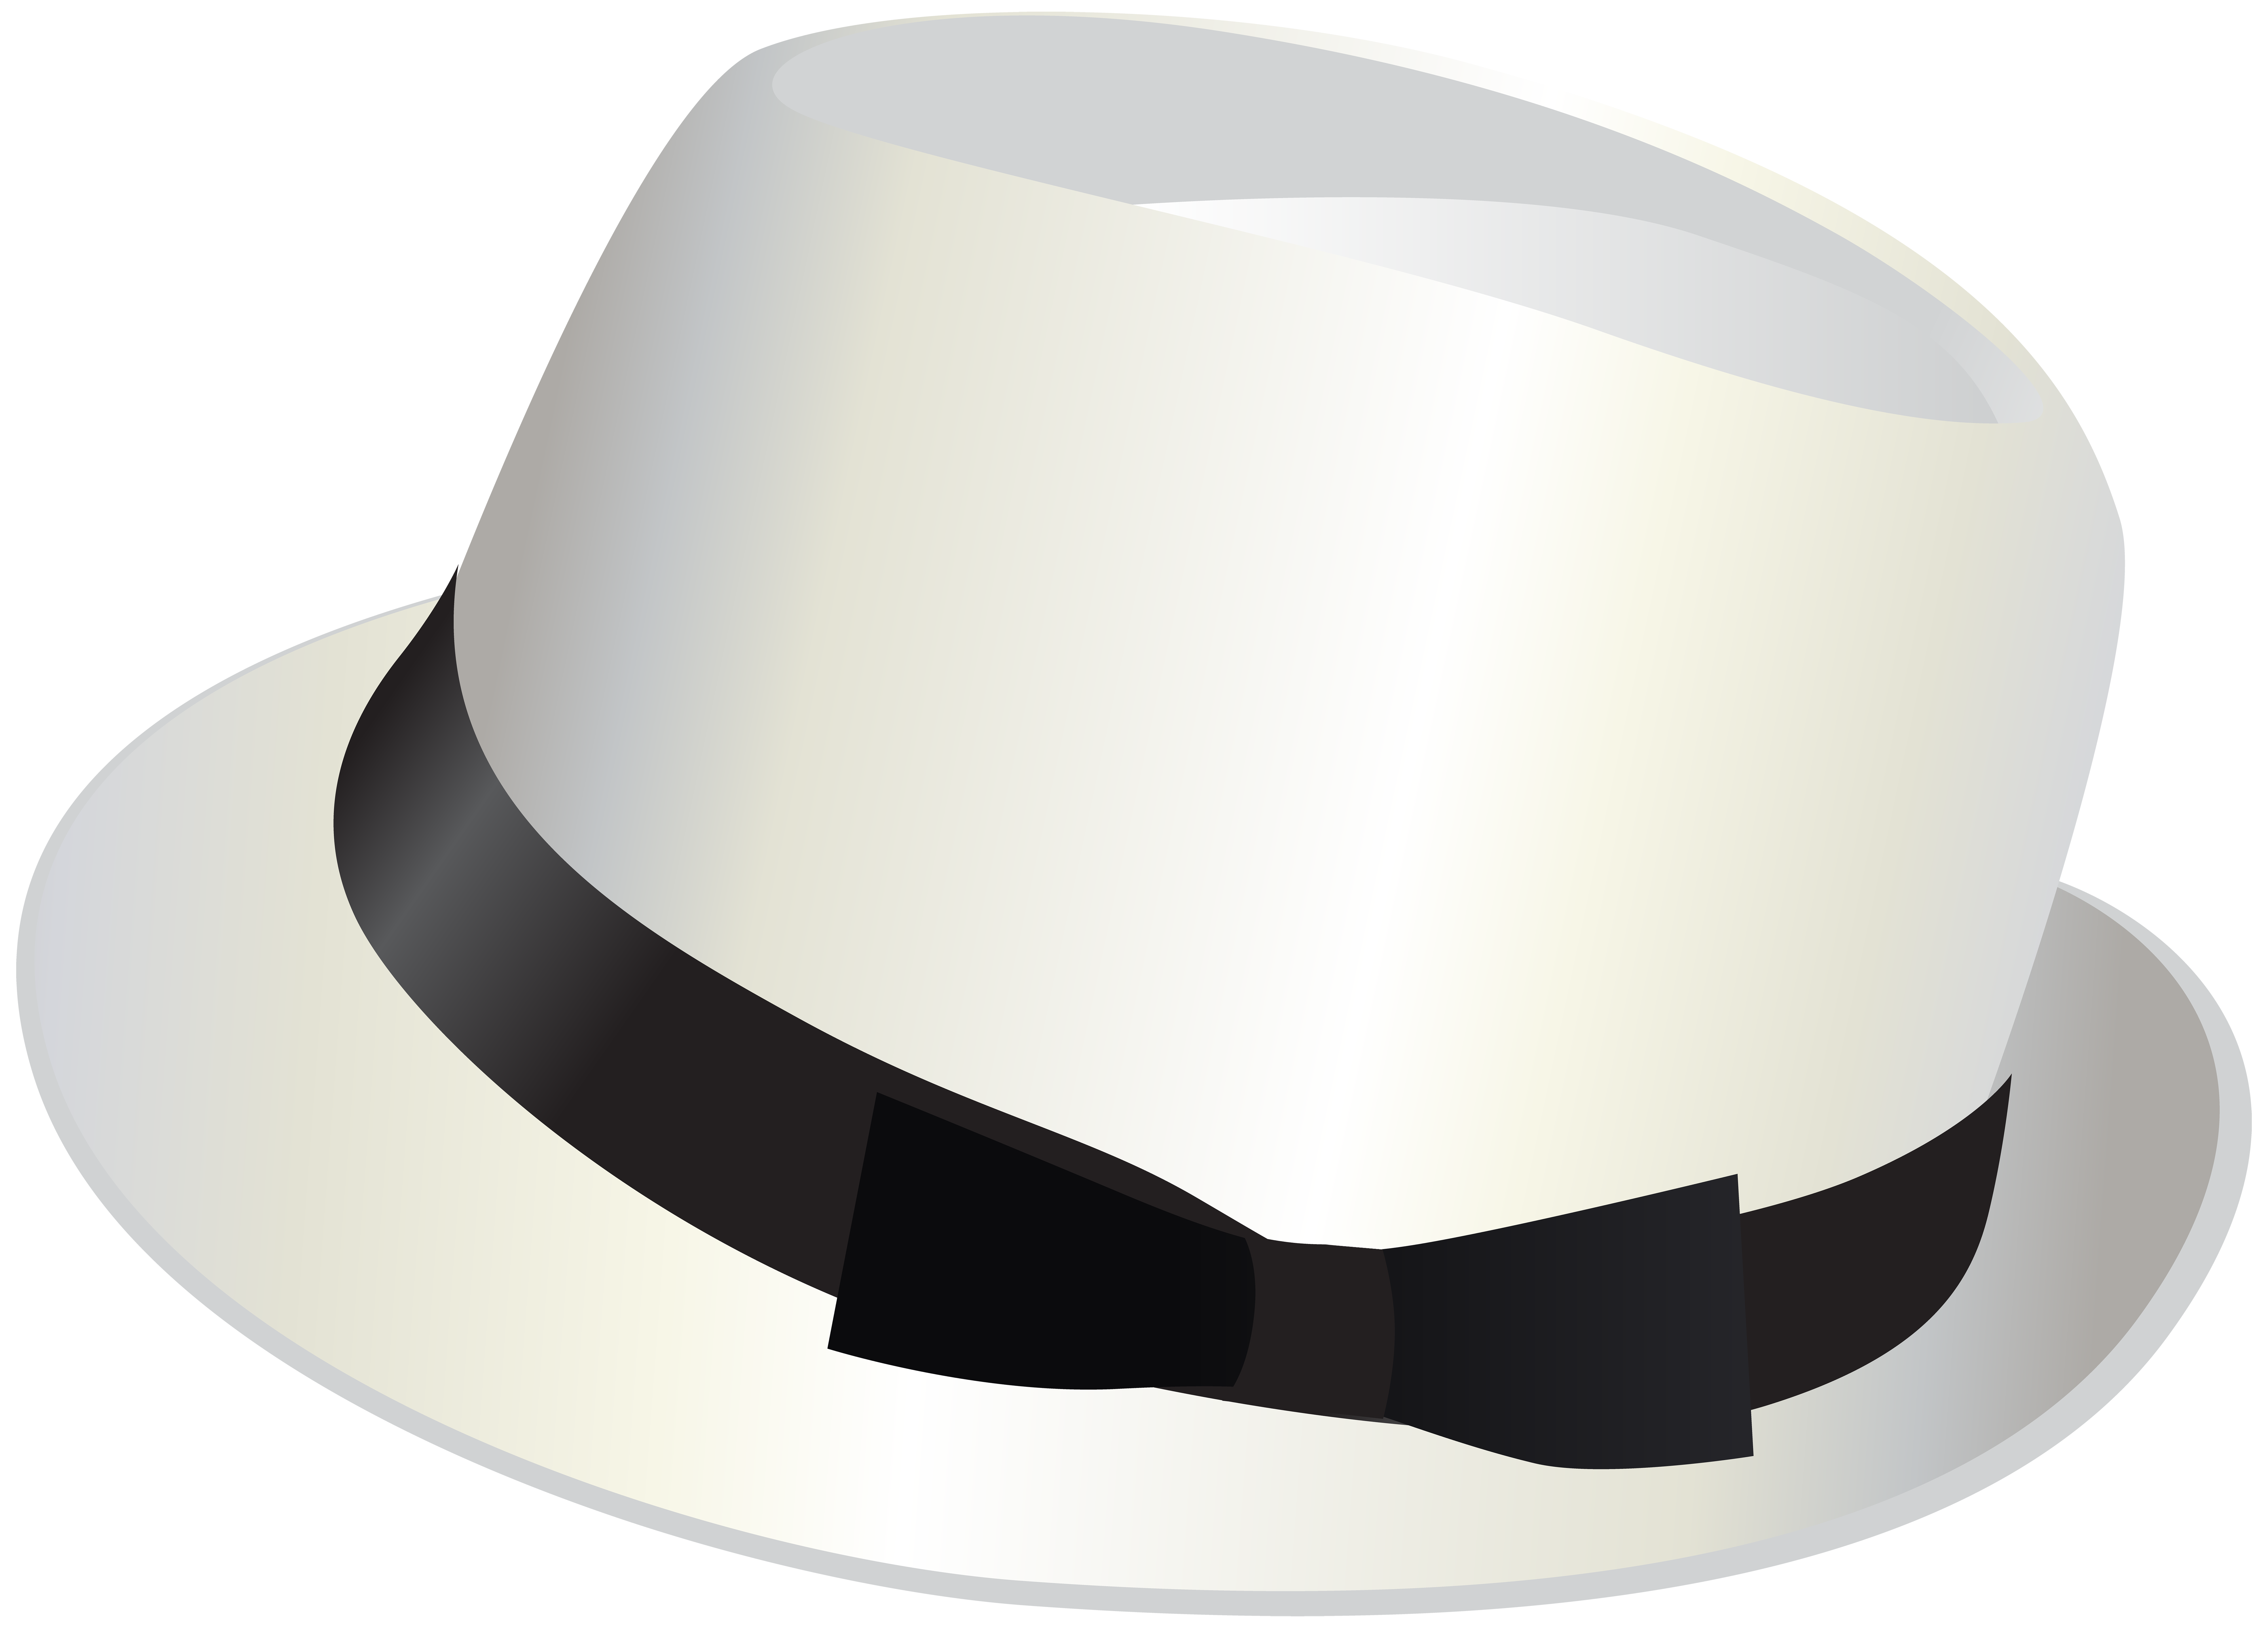 Hat keinen. Шляпа. Цилиндр (головной убор). Шляпа цилиндр белая. Шляпа на белом фоне.